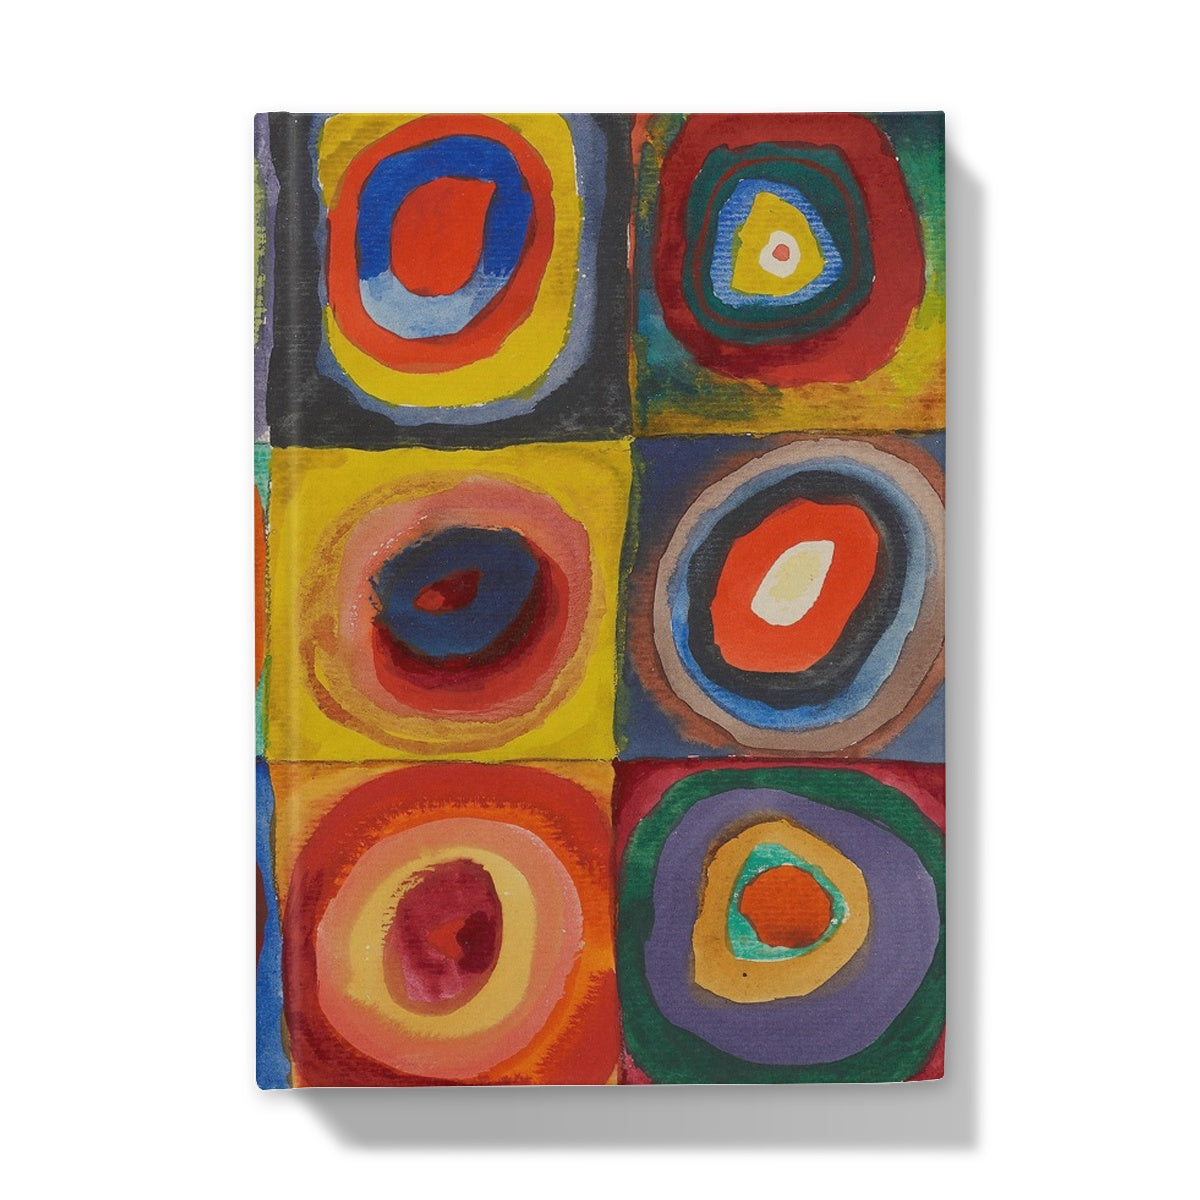 Estudio de color - Cuadrados con anillos concéntricos de Wassily Kandinsky, 1913 - Cuaderno de tapa dura